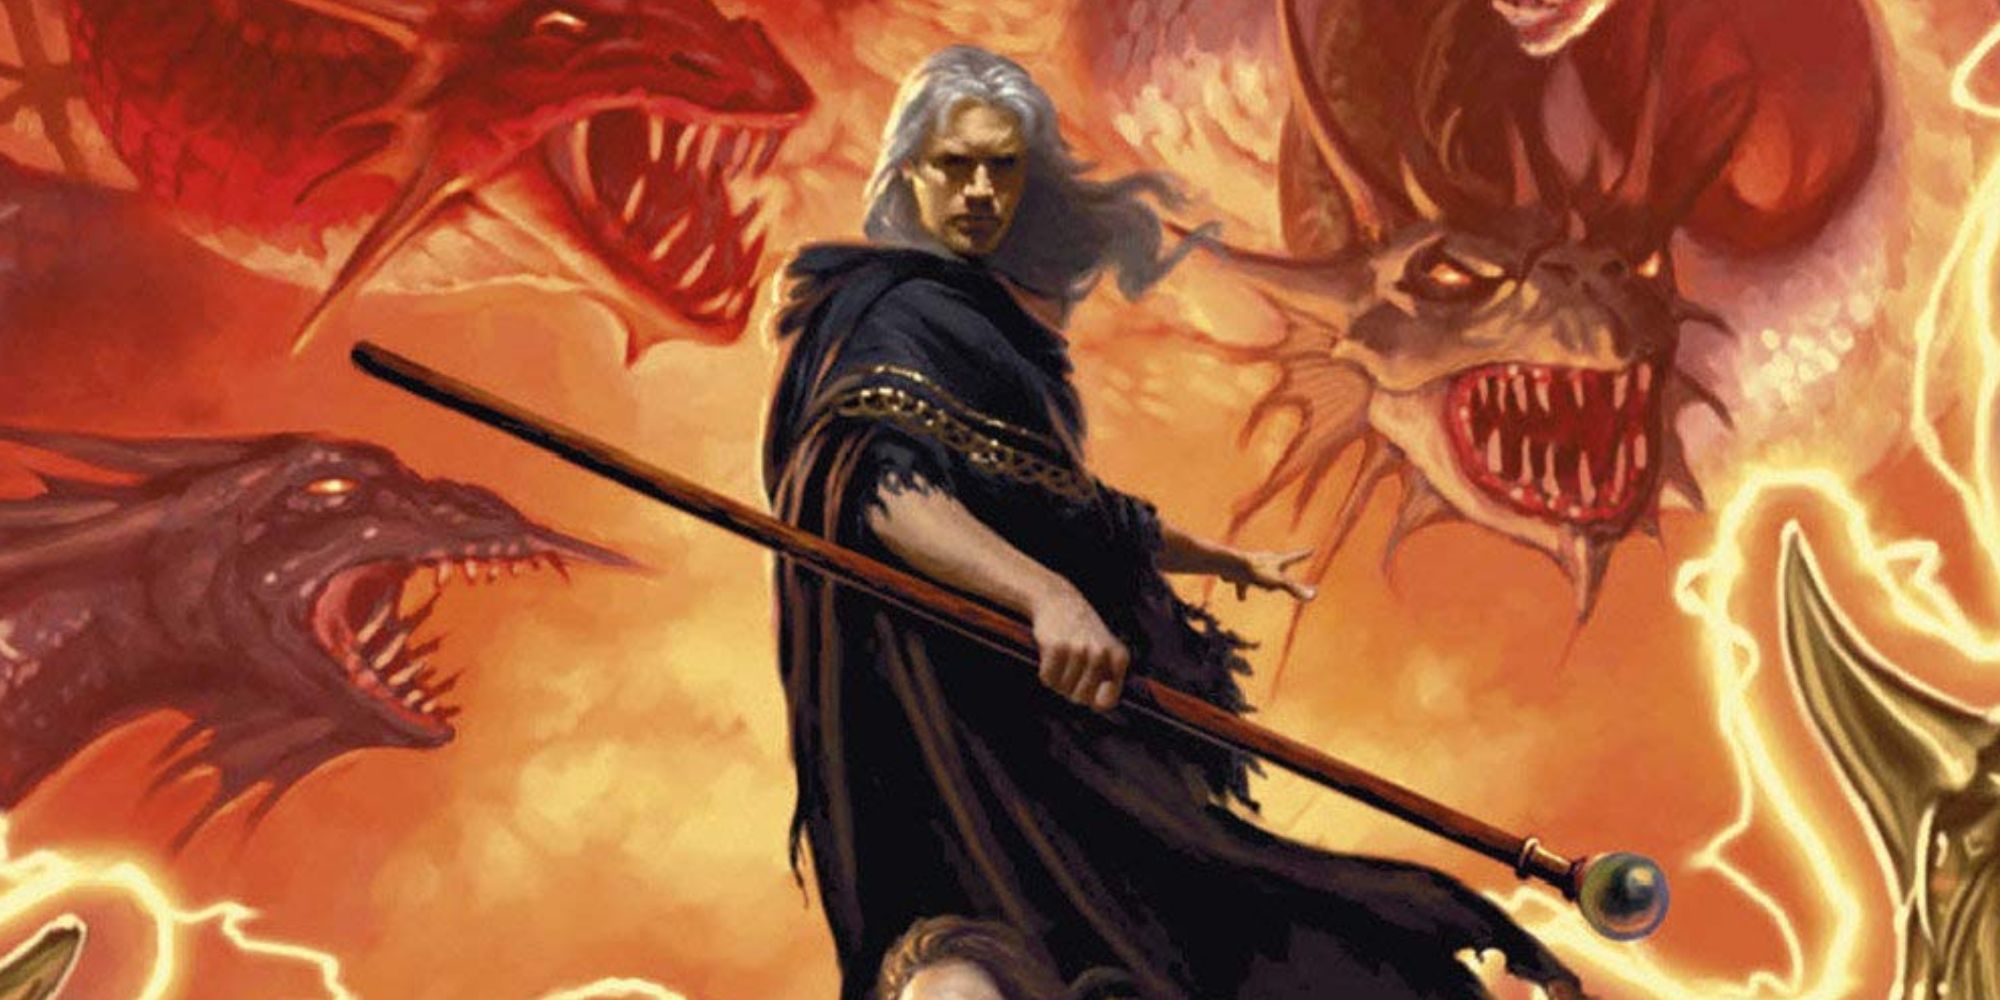 Raistlin facing Takhisis in Dungeons & Dragons' Dragonlance setting